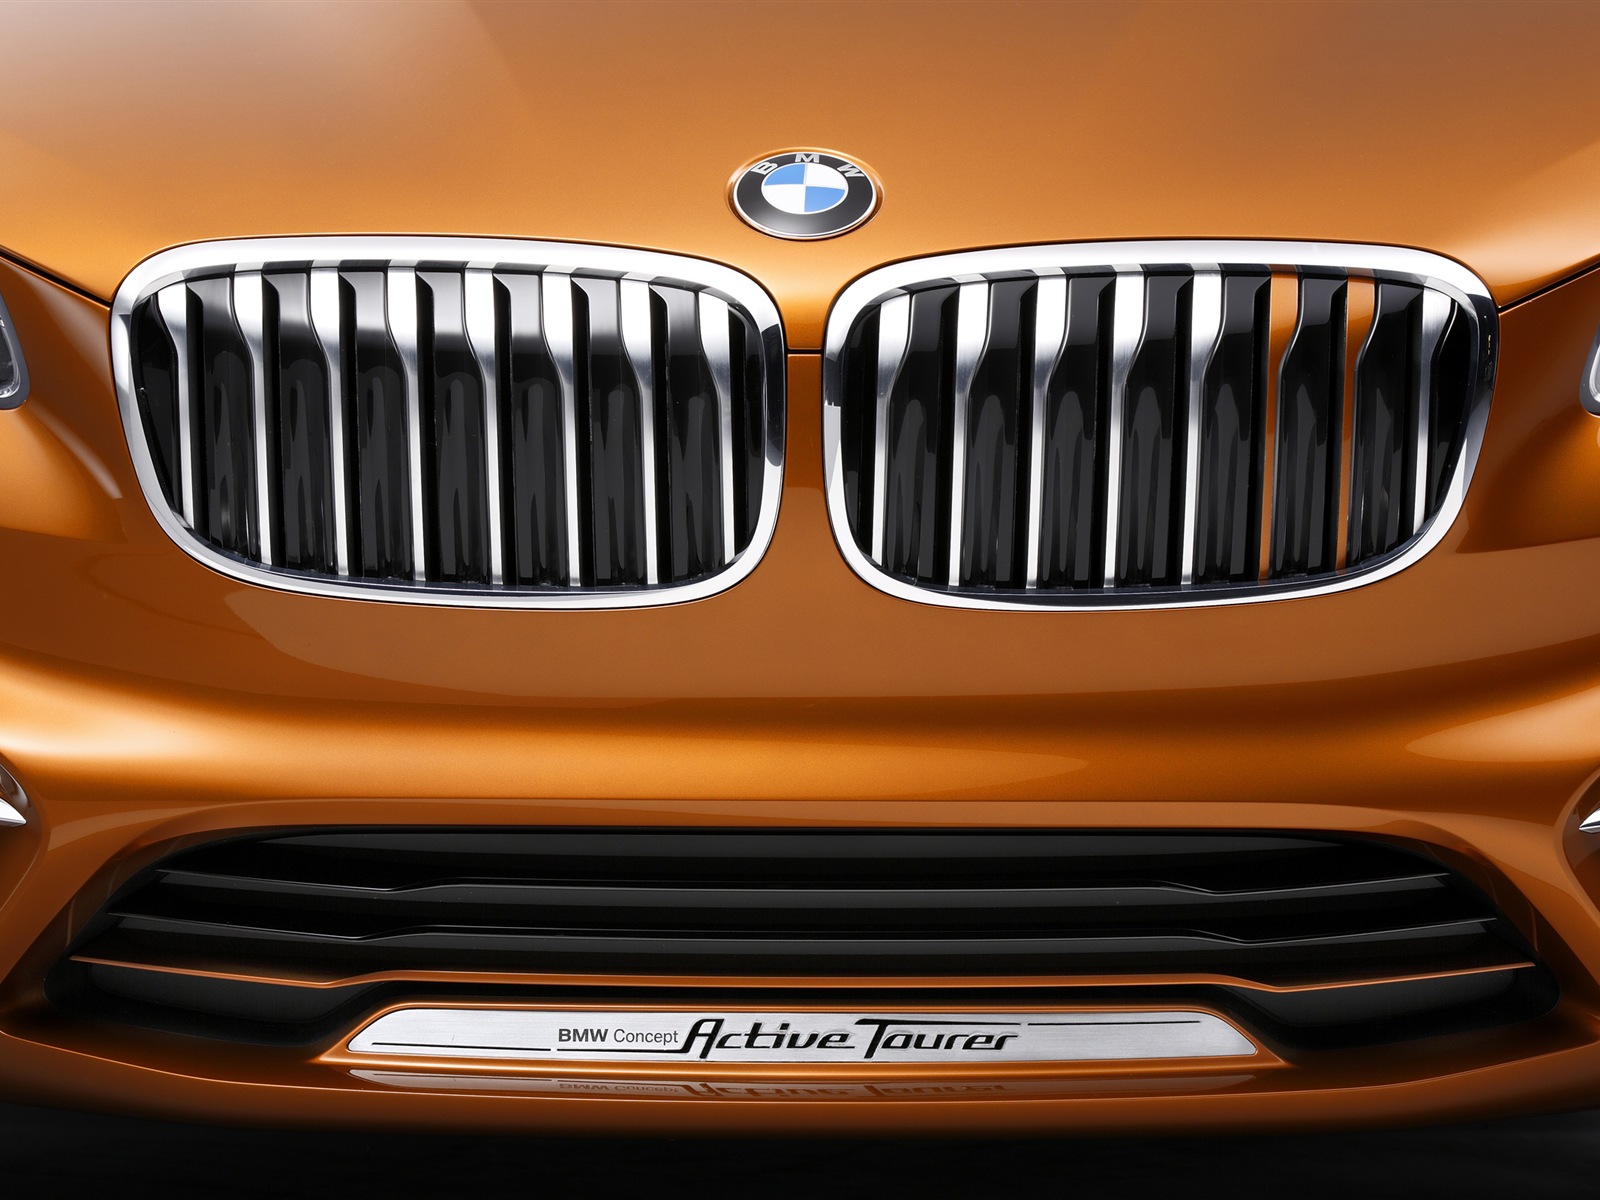 2013 BMW Concept Active Tourer 宝马旅行车 高清壁纸15 - 1600x1200